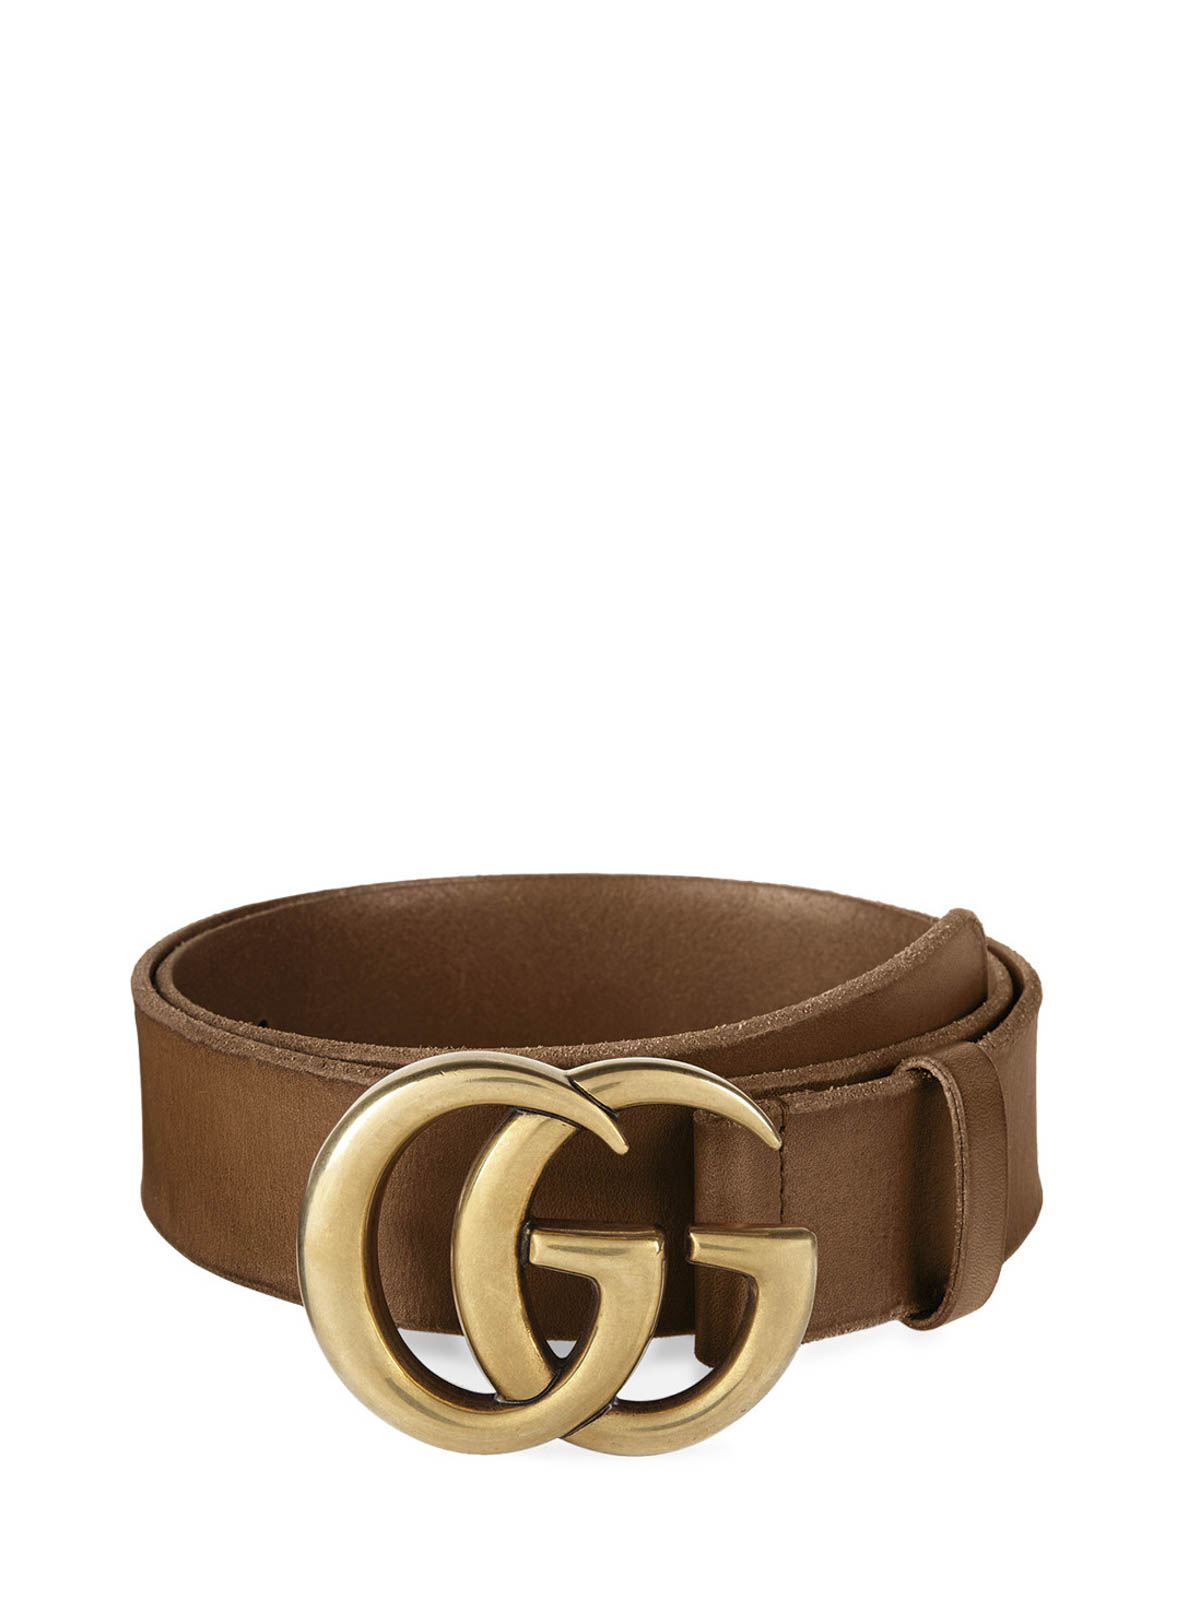 Gucci - GG buckle leather belt - belts - 409416 CVE0T 2535 | 0